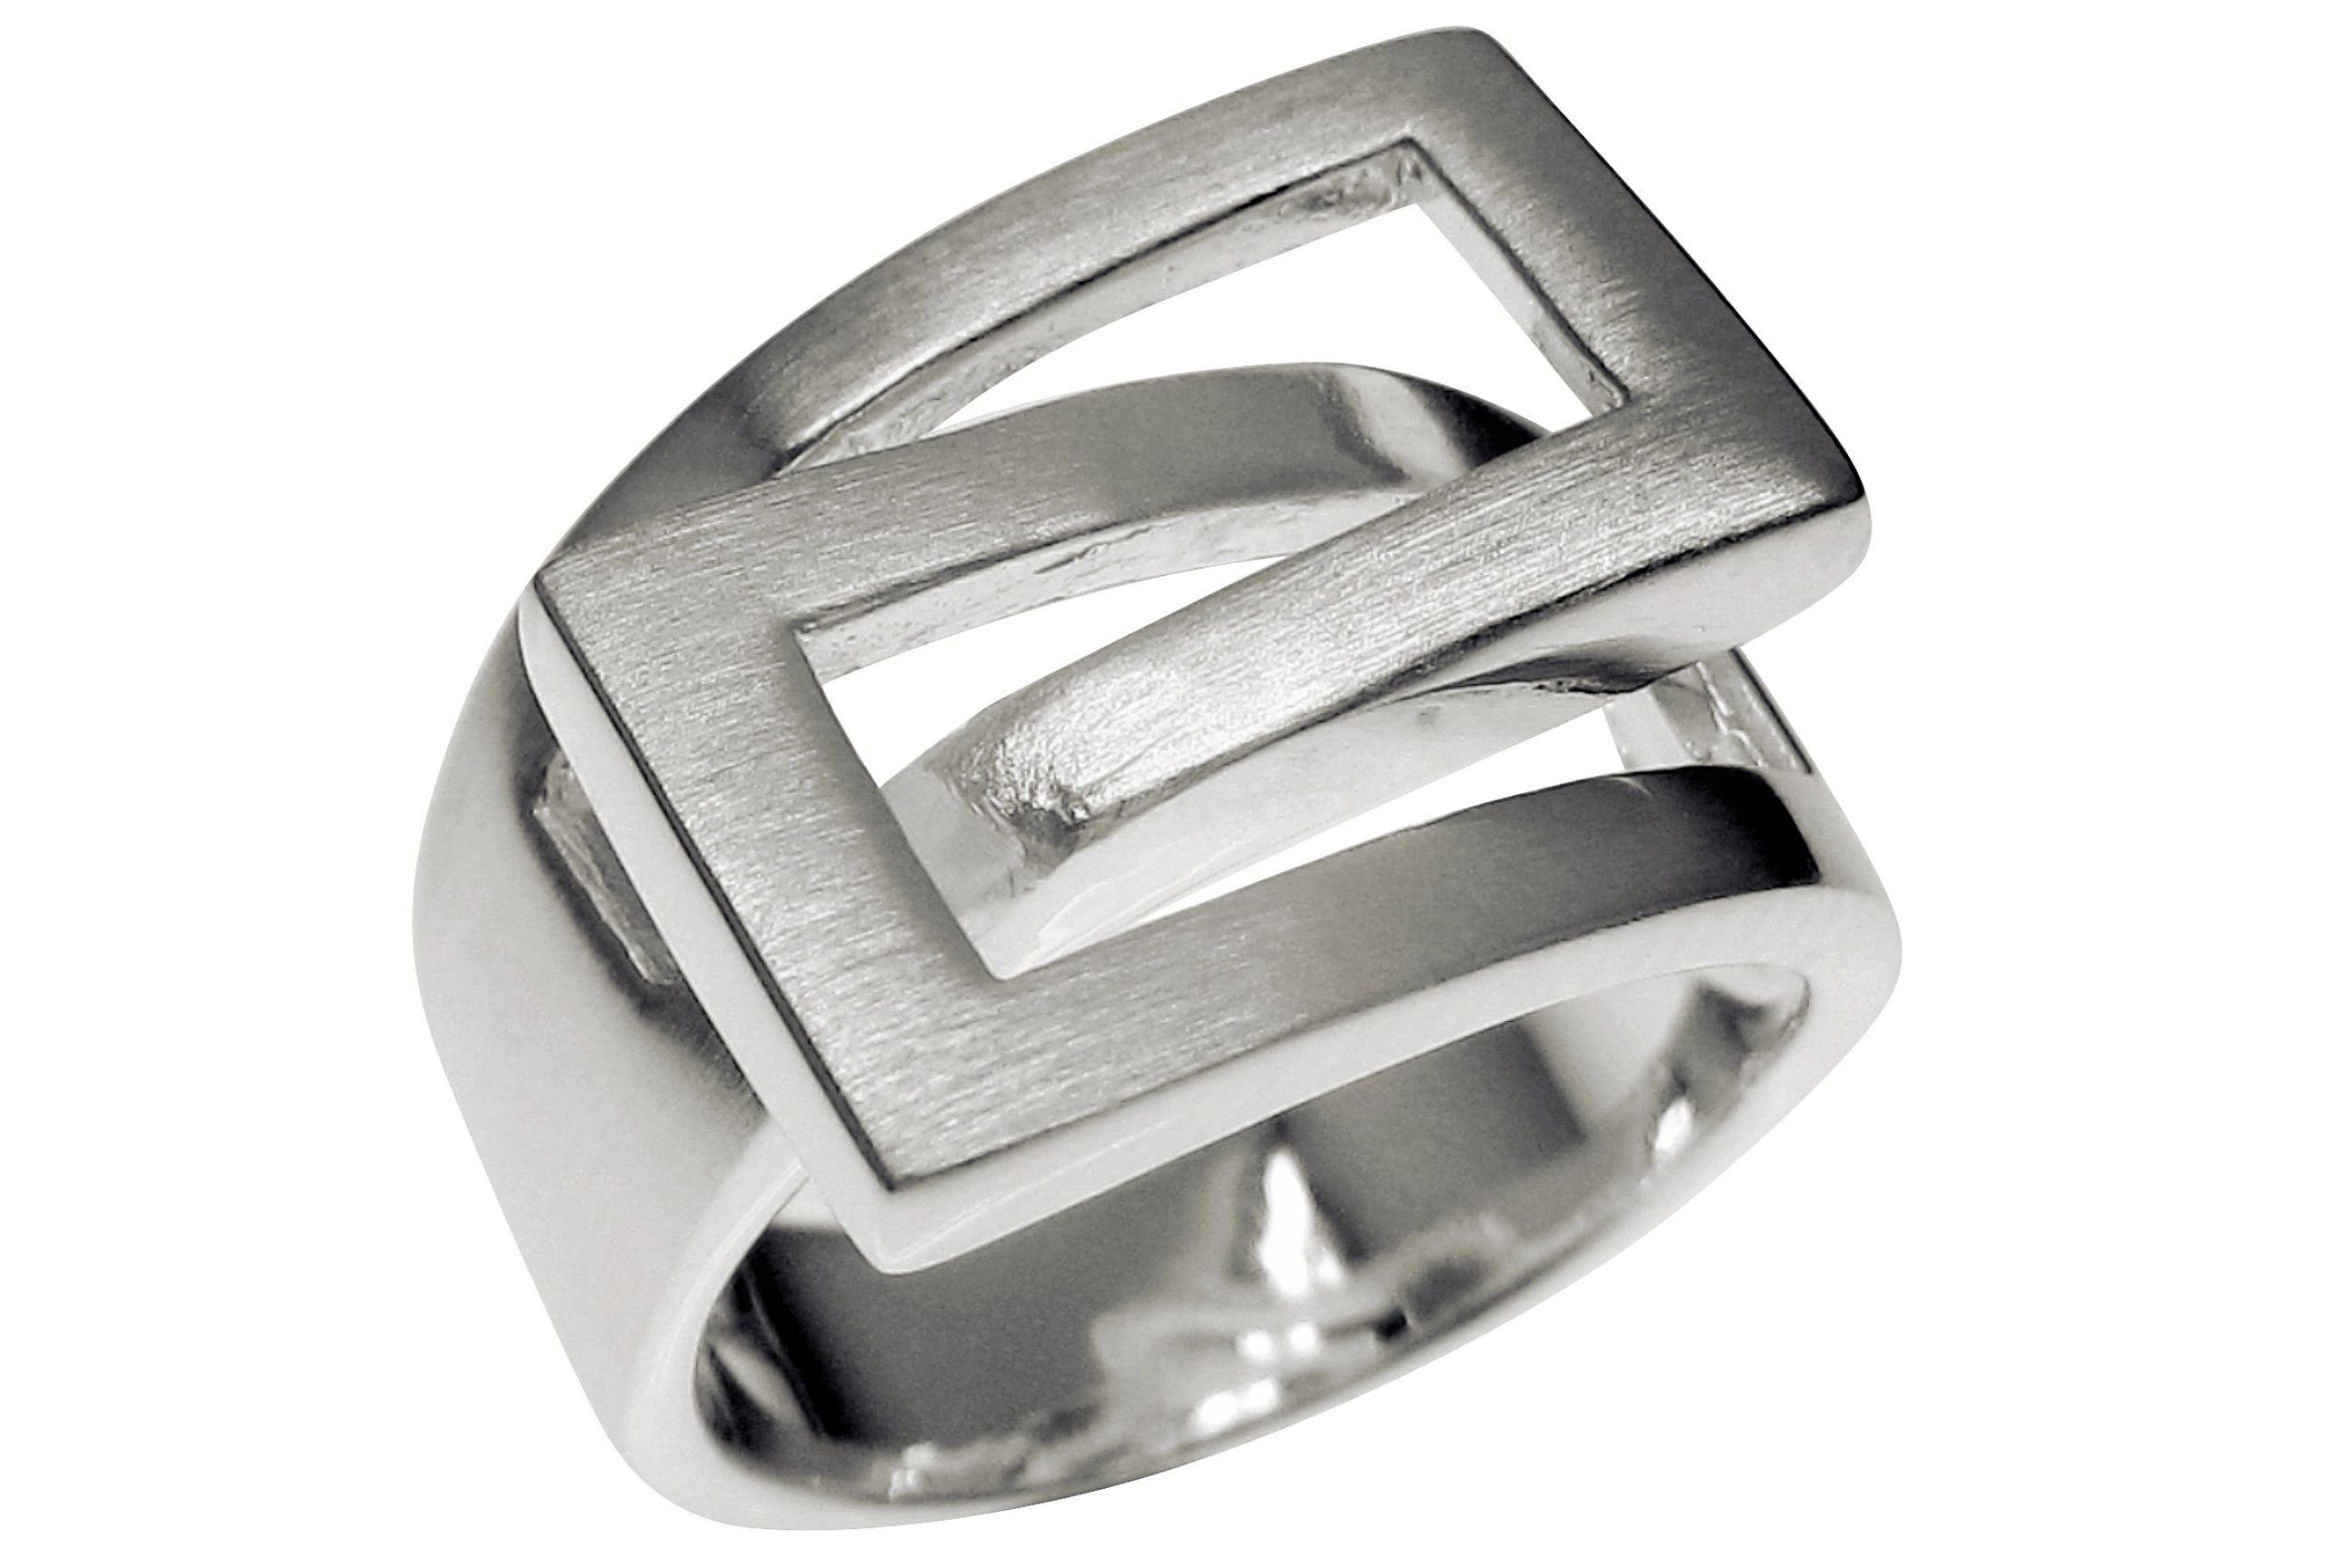 SILBERMOOS Silberring XL Ring "Ineinander umschlungen", 925 Sterling Silber